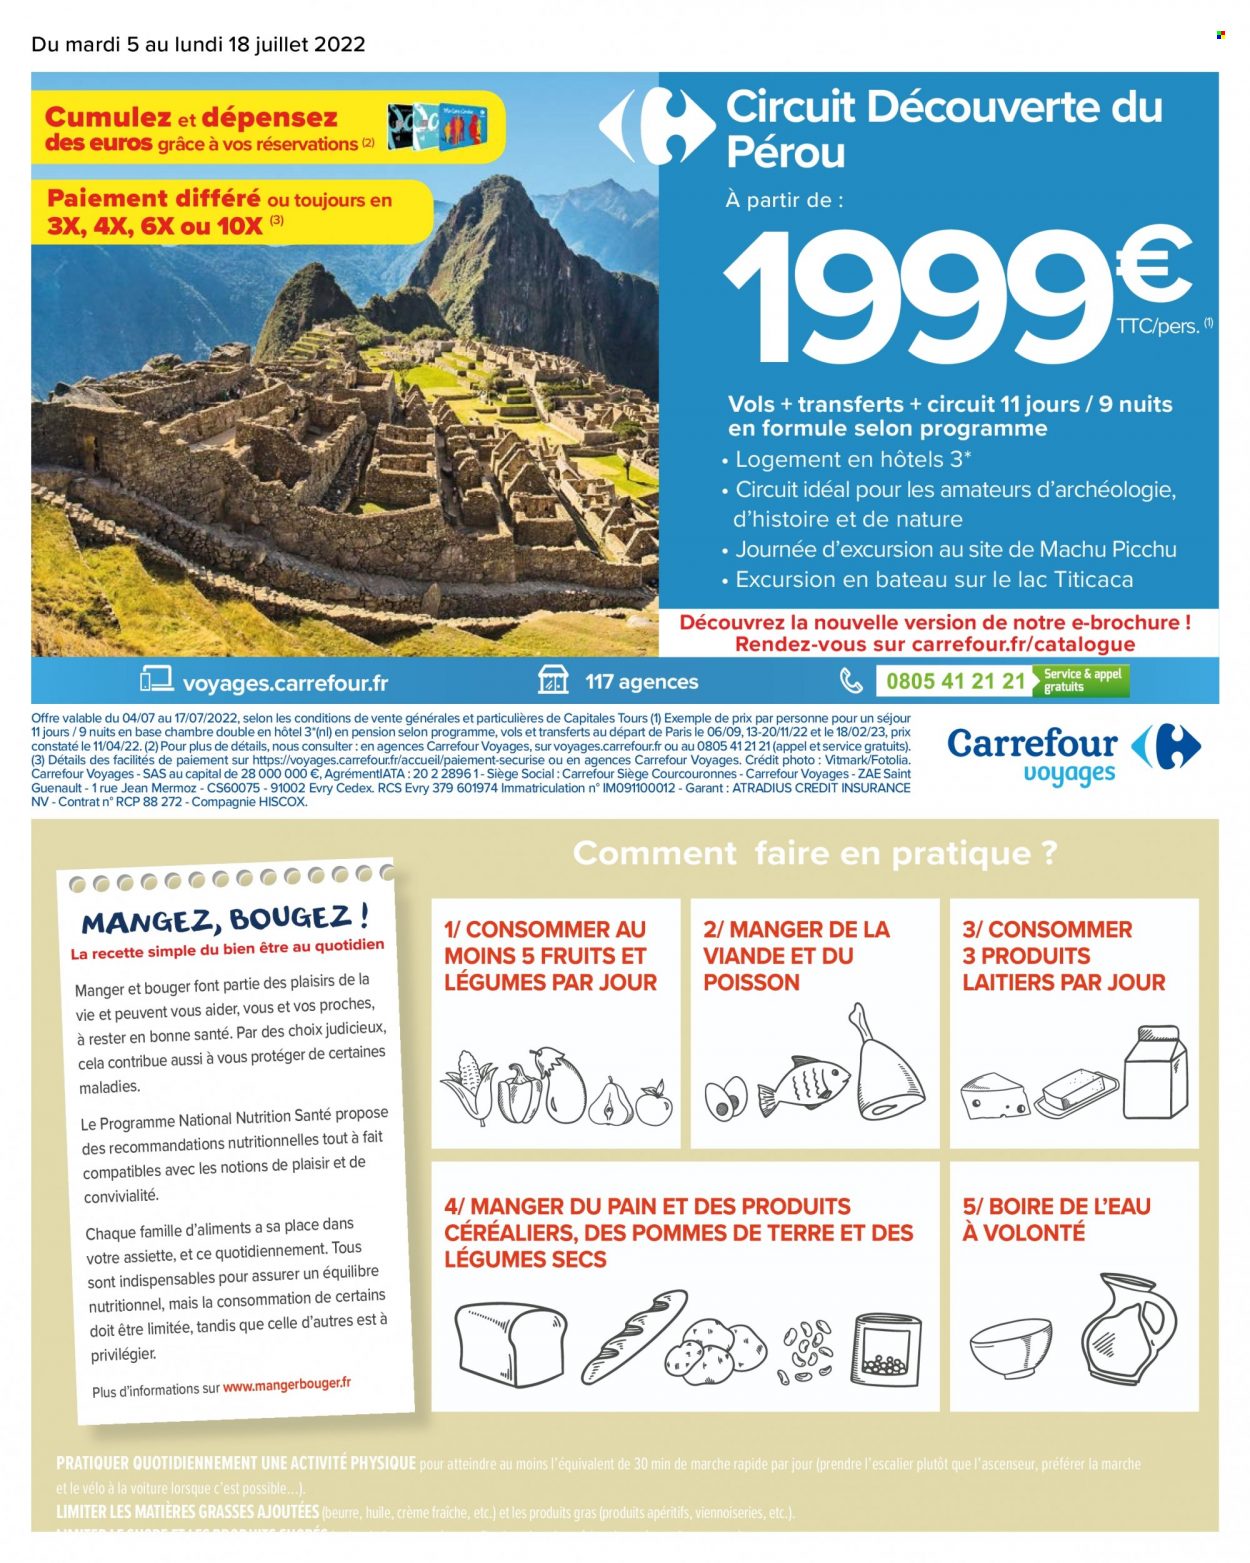 thumbnail - Catalogue Carrefour Hypermarchés - 05/07/2022 - 18/07/2022 - Produits soldés - dessert, nem, beurre, crème fraîche, bateau. Page 2.